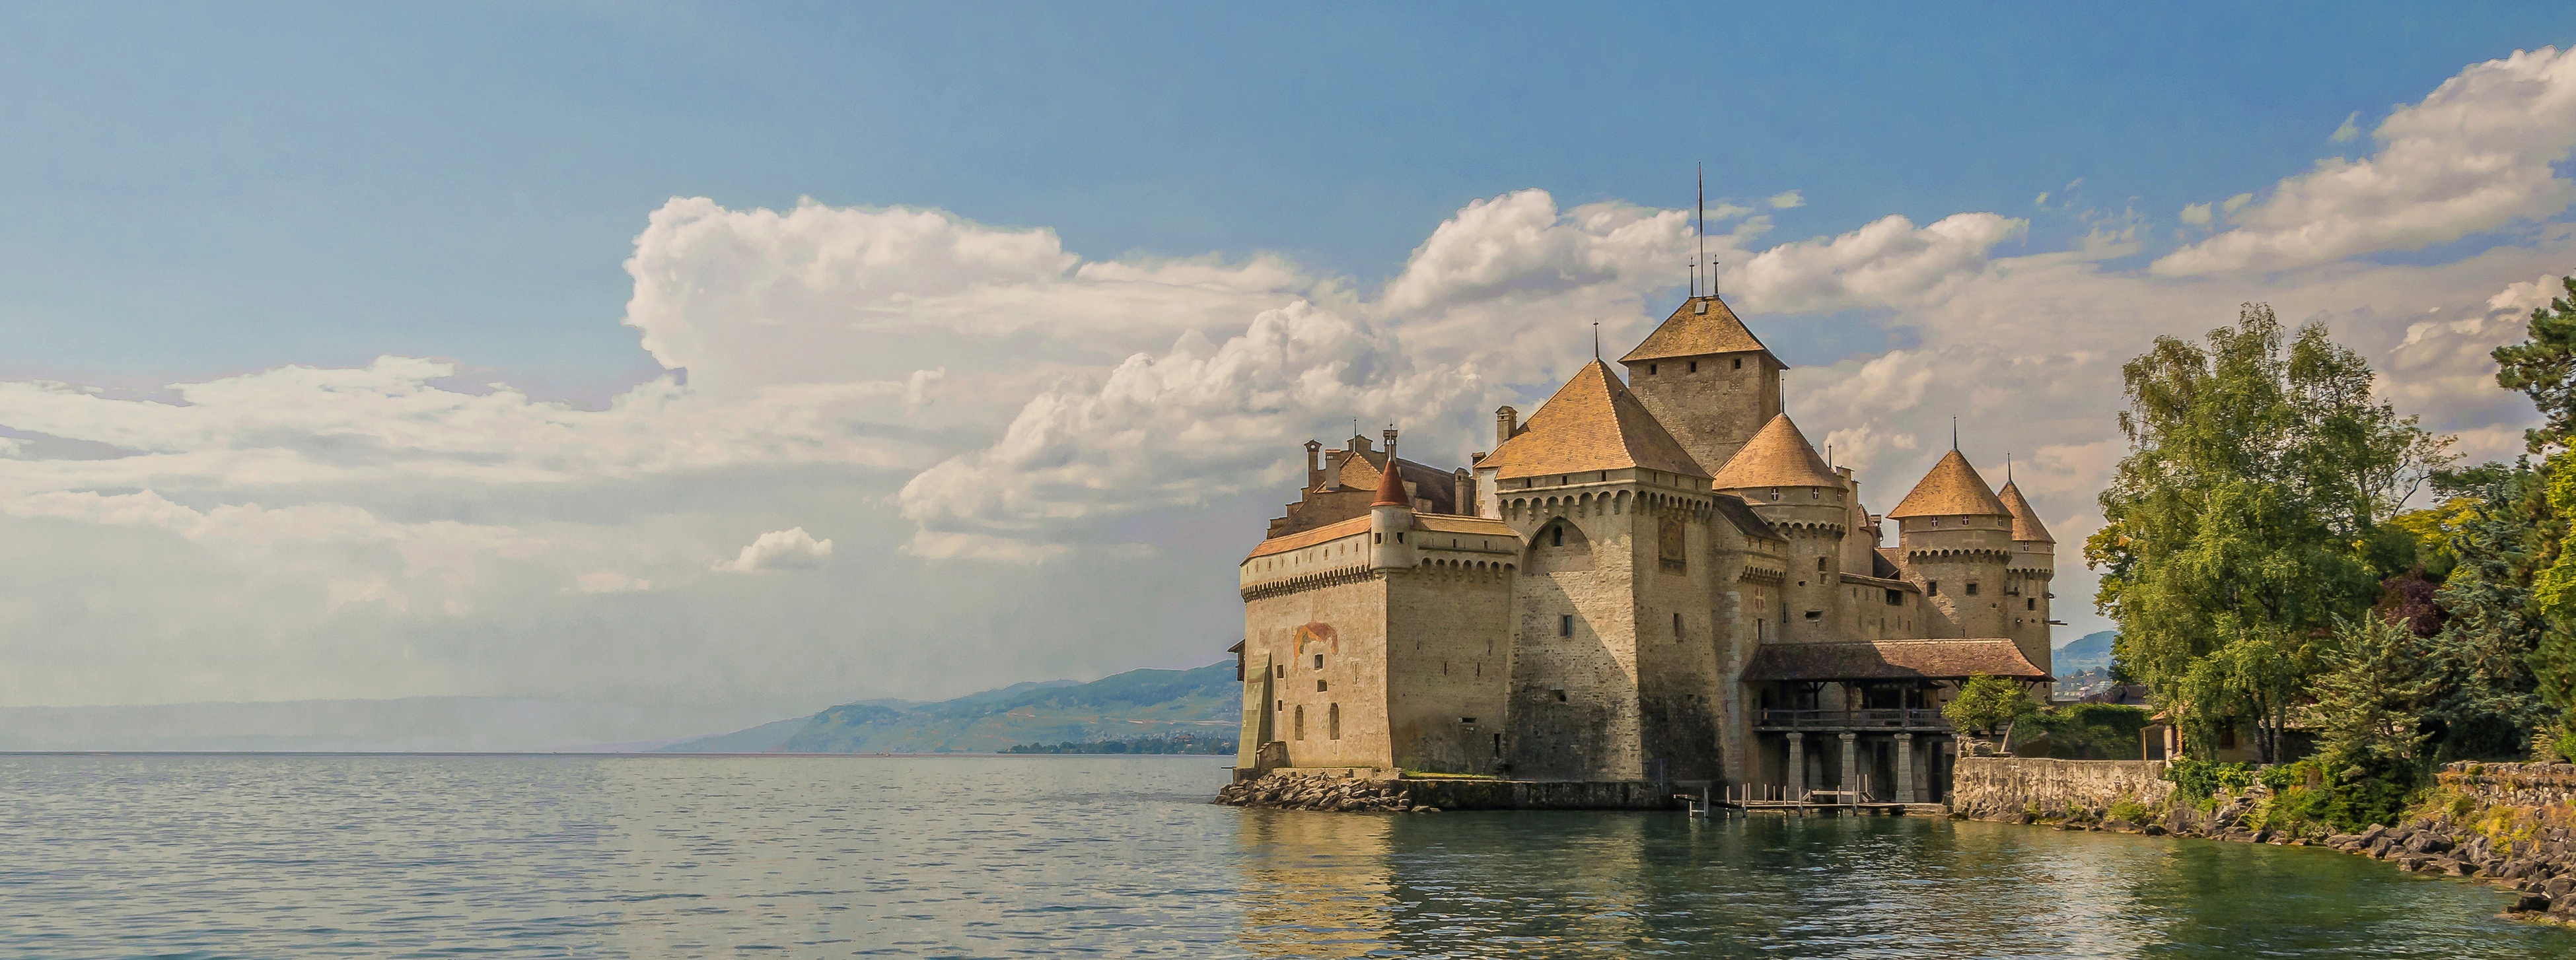 Популярные заставки и фоны Женевское Озеро на компьютер